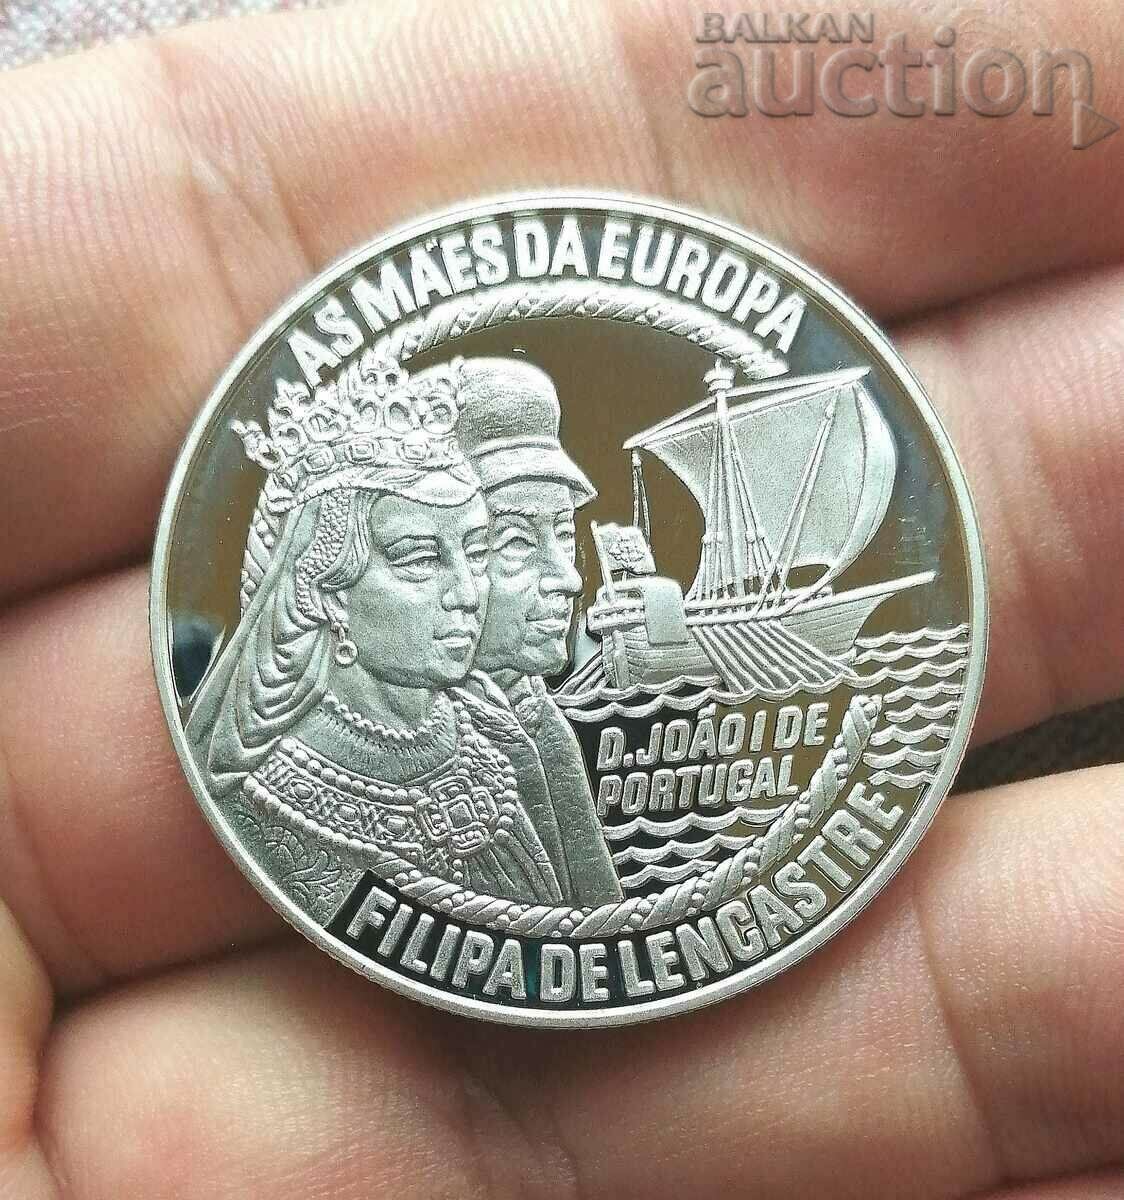 Португалия 50 евро, 1996 г. As Maes'da Europa.